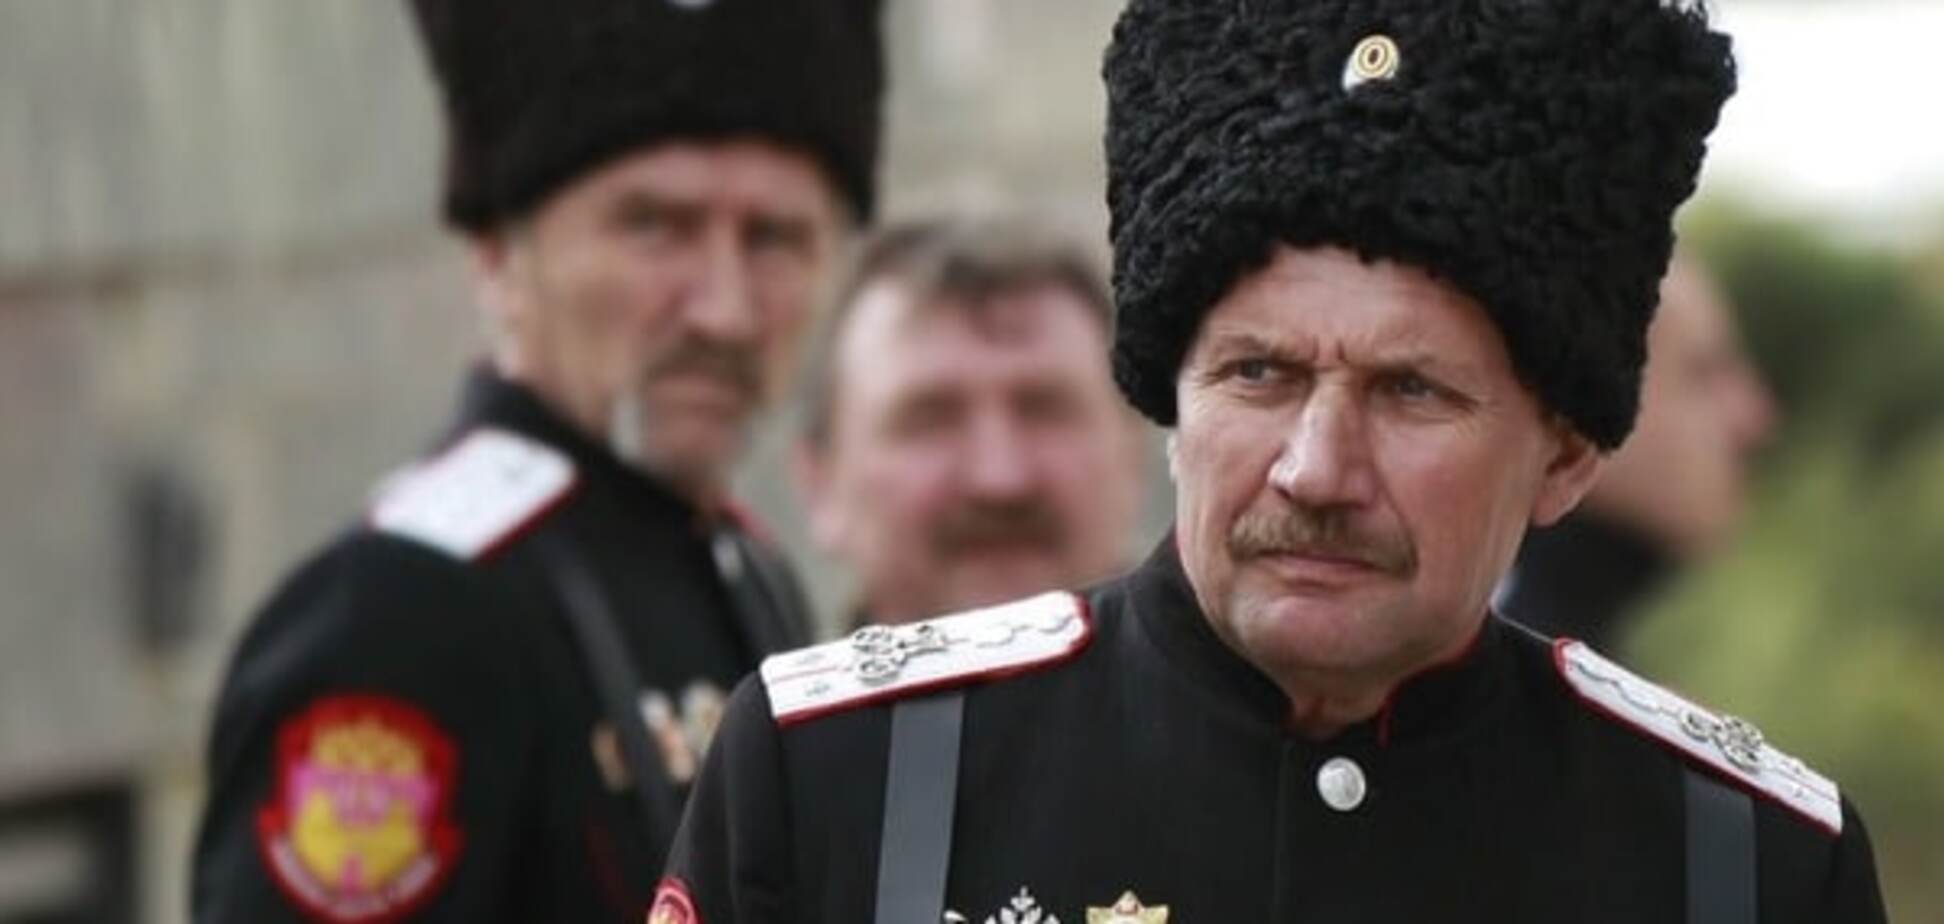 Ряженые: казаки в Крыму нарушают права человека - правозащитники